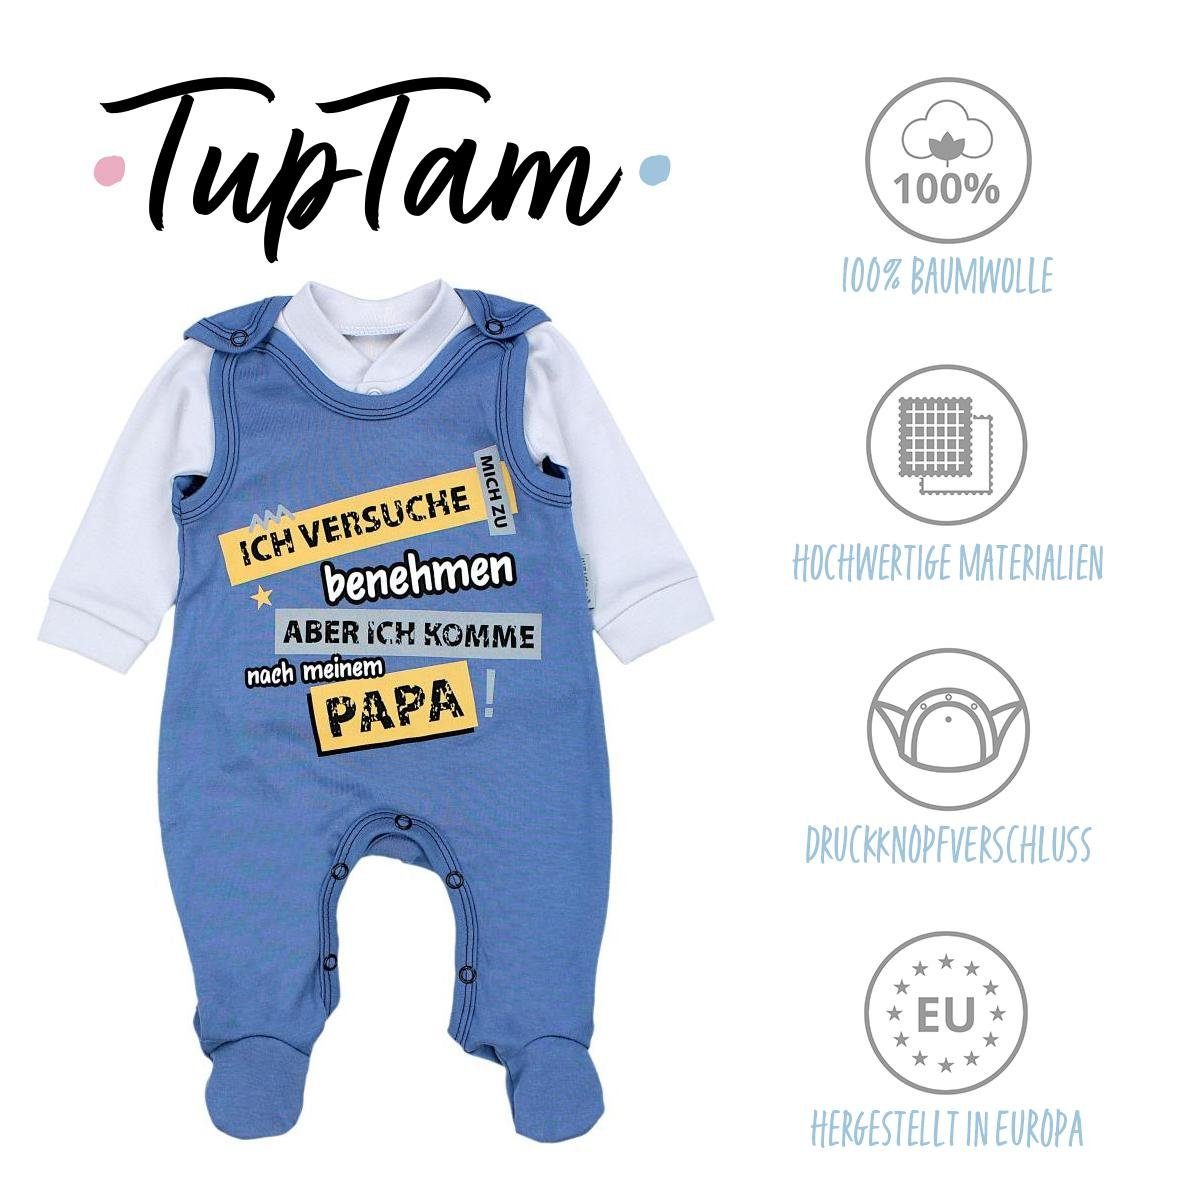 TupTam Erstausstattungspaket TupTam Unisex zu Jeansblau benehmen... Mamas versuche Ich Baby & Papas Set Schatz Spruch Strampler / mich